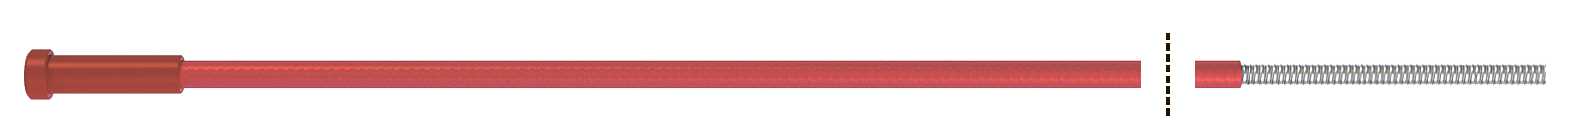 Fubag Канал направляющий 4.40 м диам. 1.0-1.2_сталь_красный (1 шт.) FB.SLR-40 Аксессуары к горелкам TIG, MIG/MAG фото, изображение